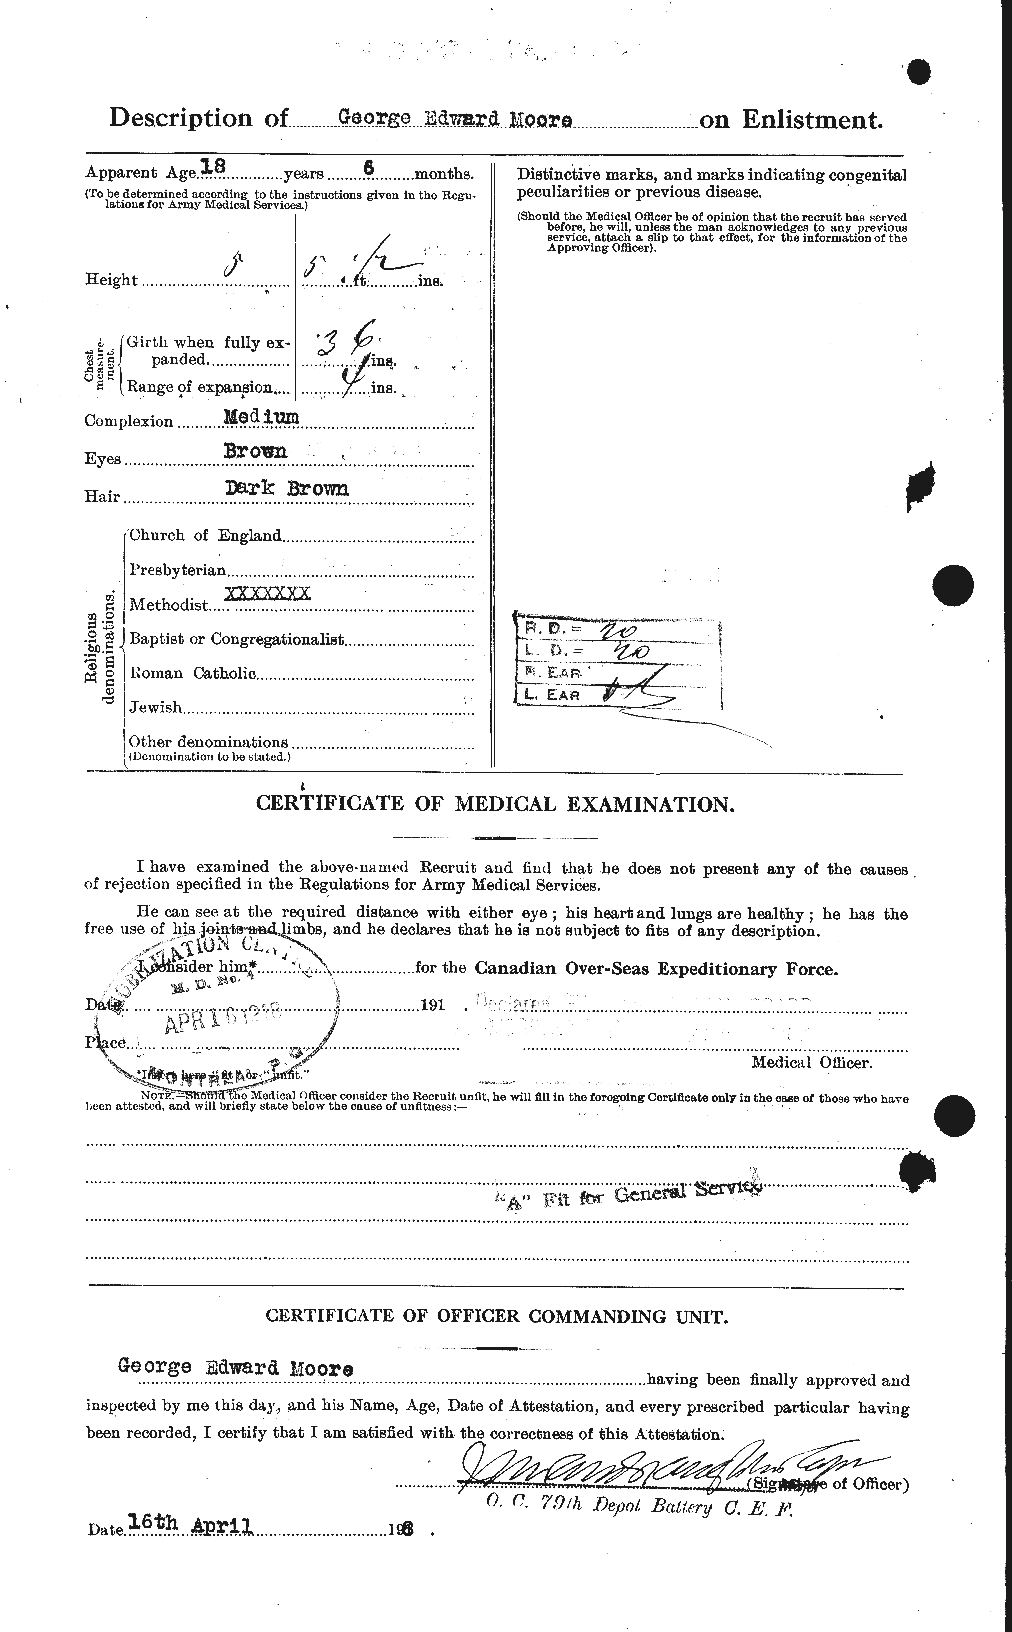 Dossiers du Personnel de la Première Guerre mondiale - CEC 501997b